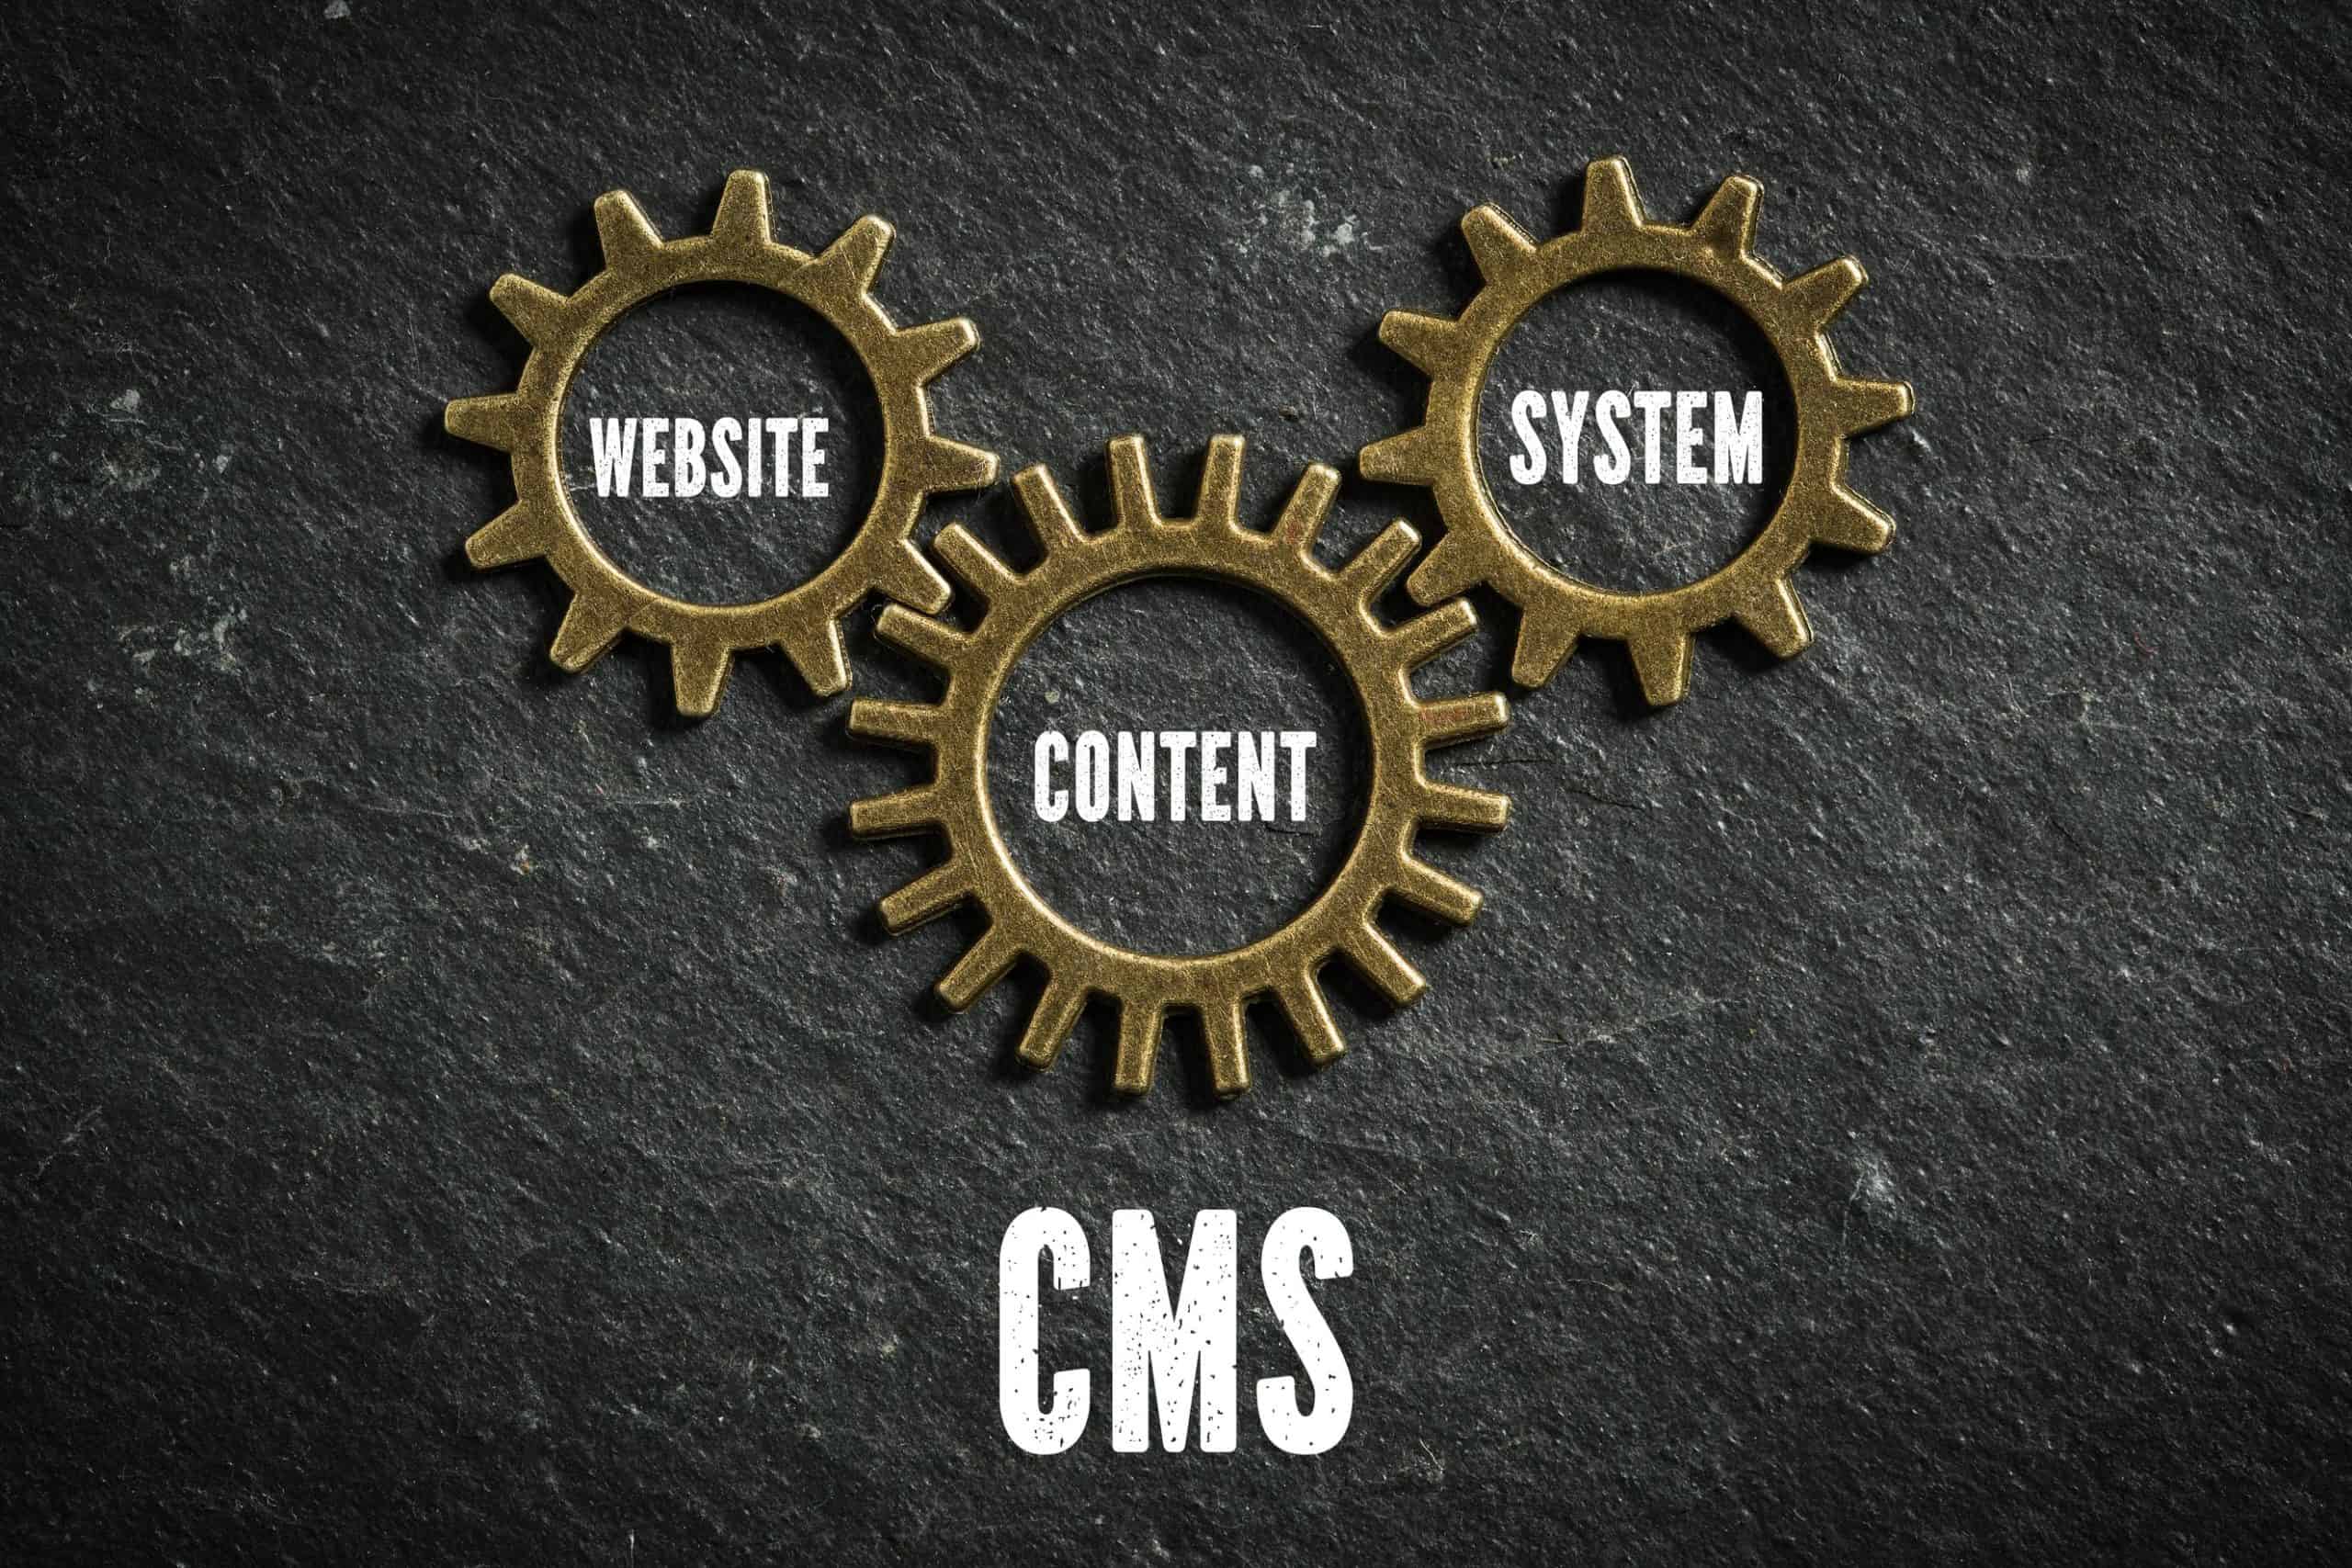 verzahnte Zahnräder mit der Aufschrift: "Website", "Content", "System" und der Bildunterschrift "CMS"